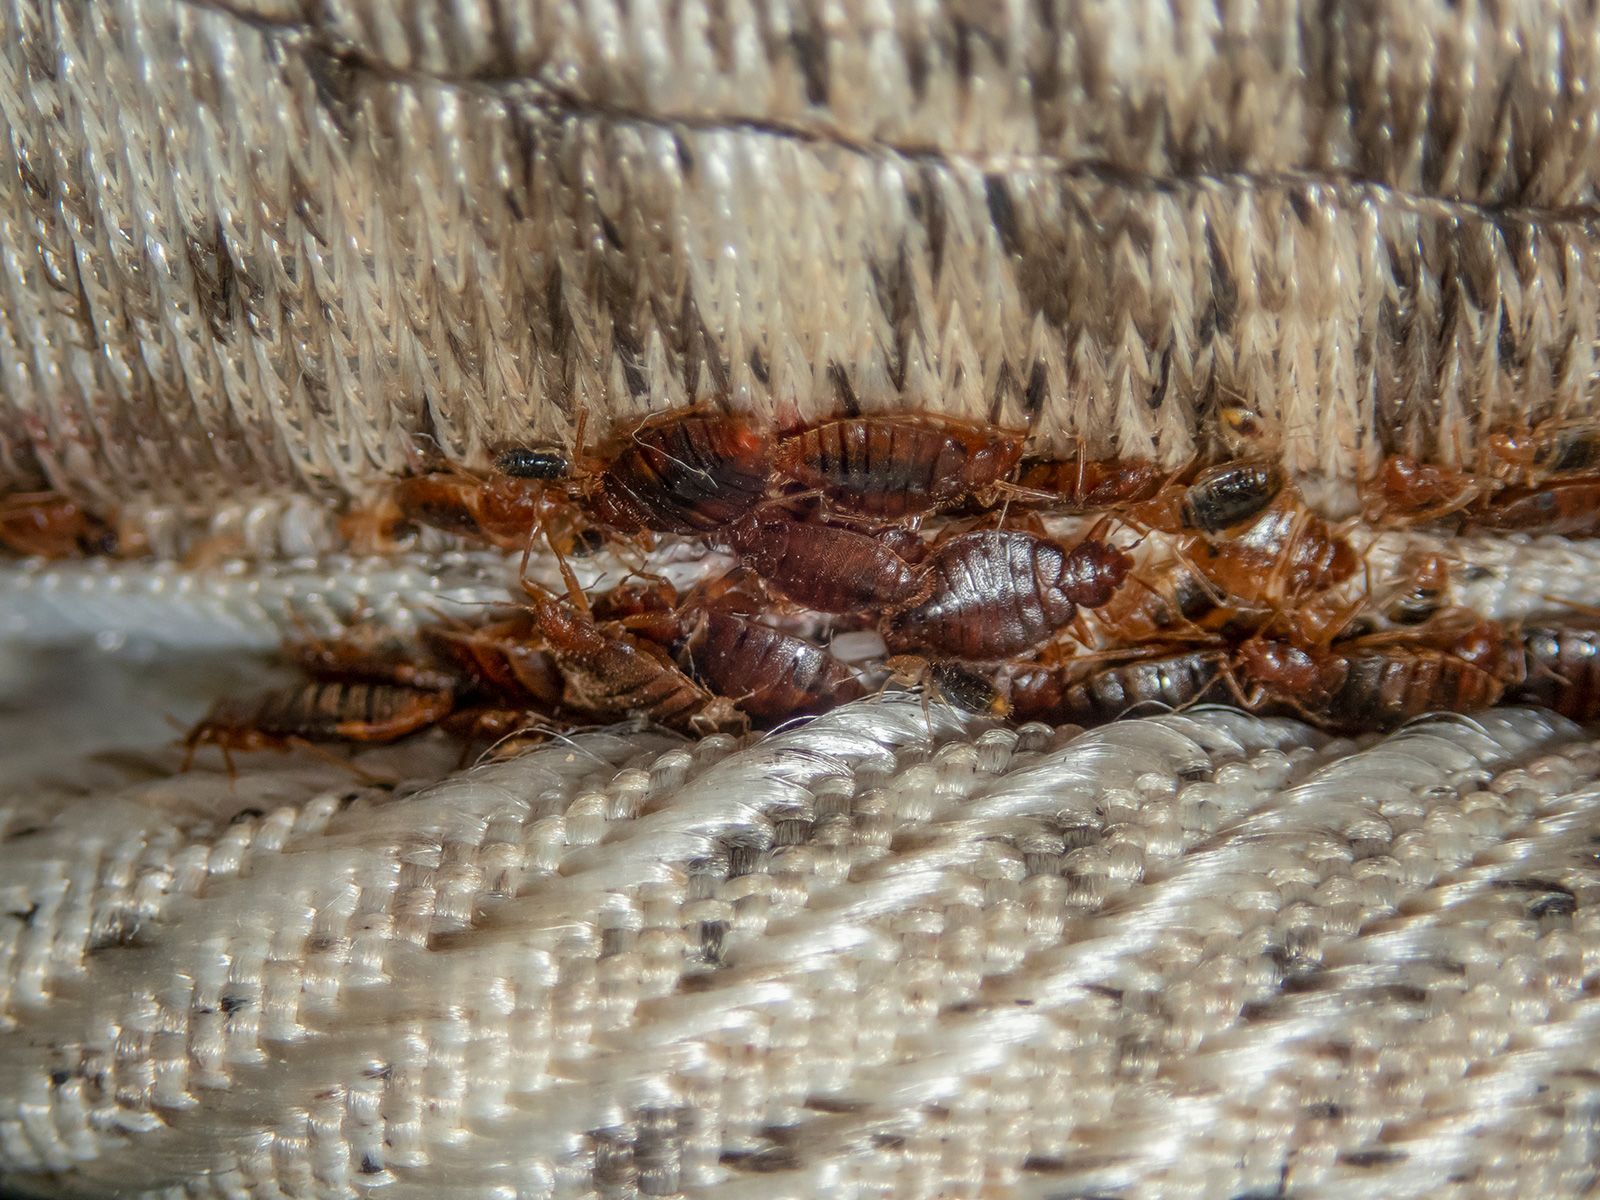 https://media.cnn.com/api/v1/images/stellar/prod/230628145704-03-bedbugs-travel-infestation.jpg?c=original